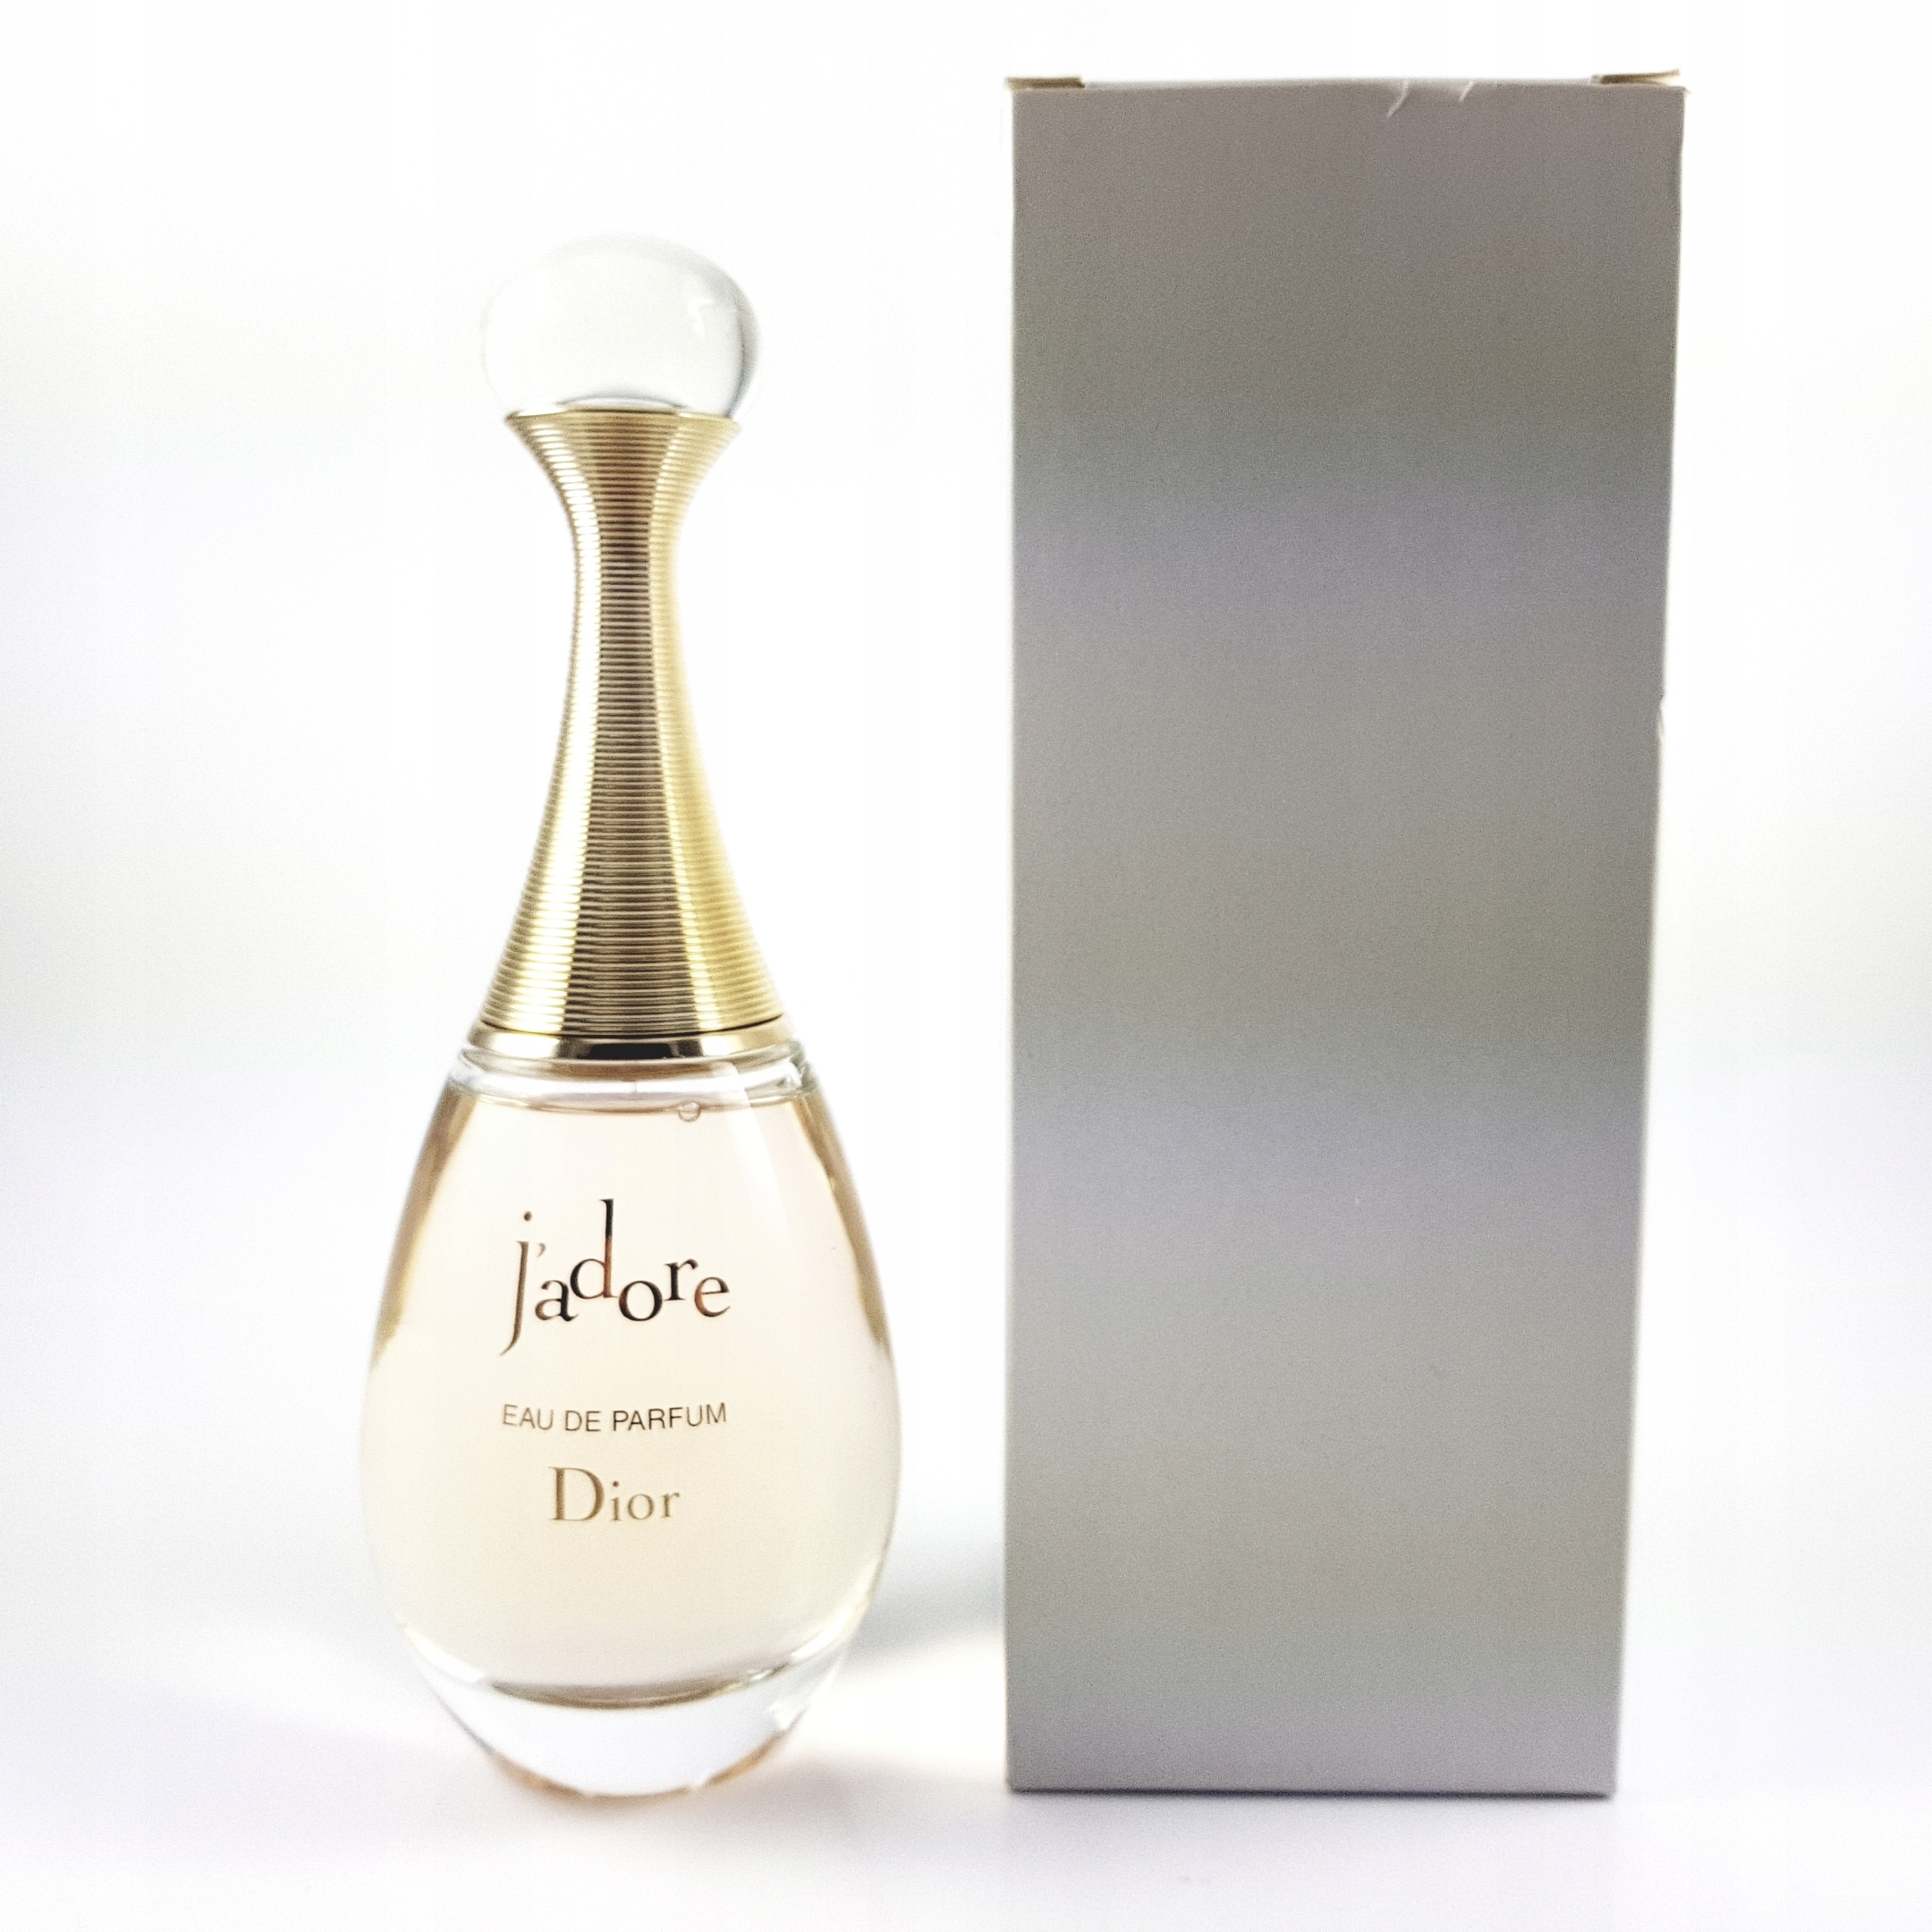 Духи жадор оригинал. Jadore Dior 100 ml Original narxi. Упаковка диор Jadore. Диор духи Фемме. Диор жадор классика парфюмированная вода.